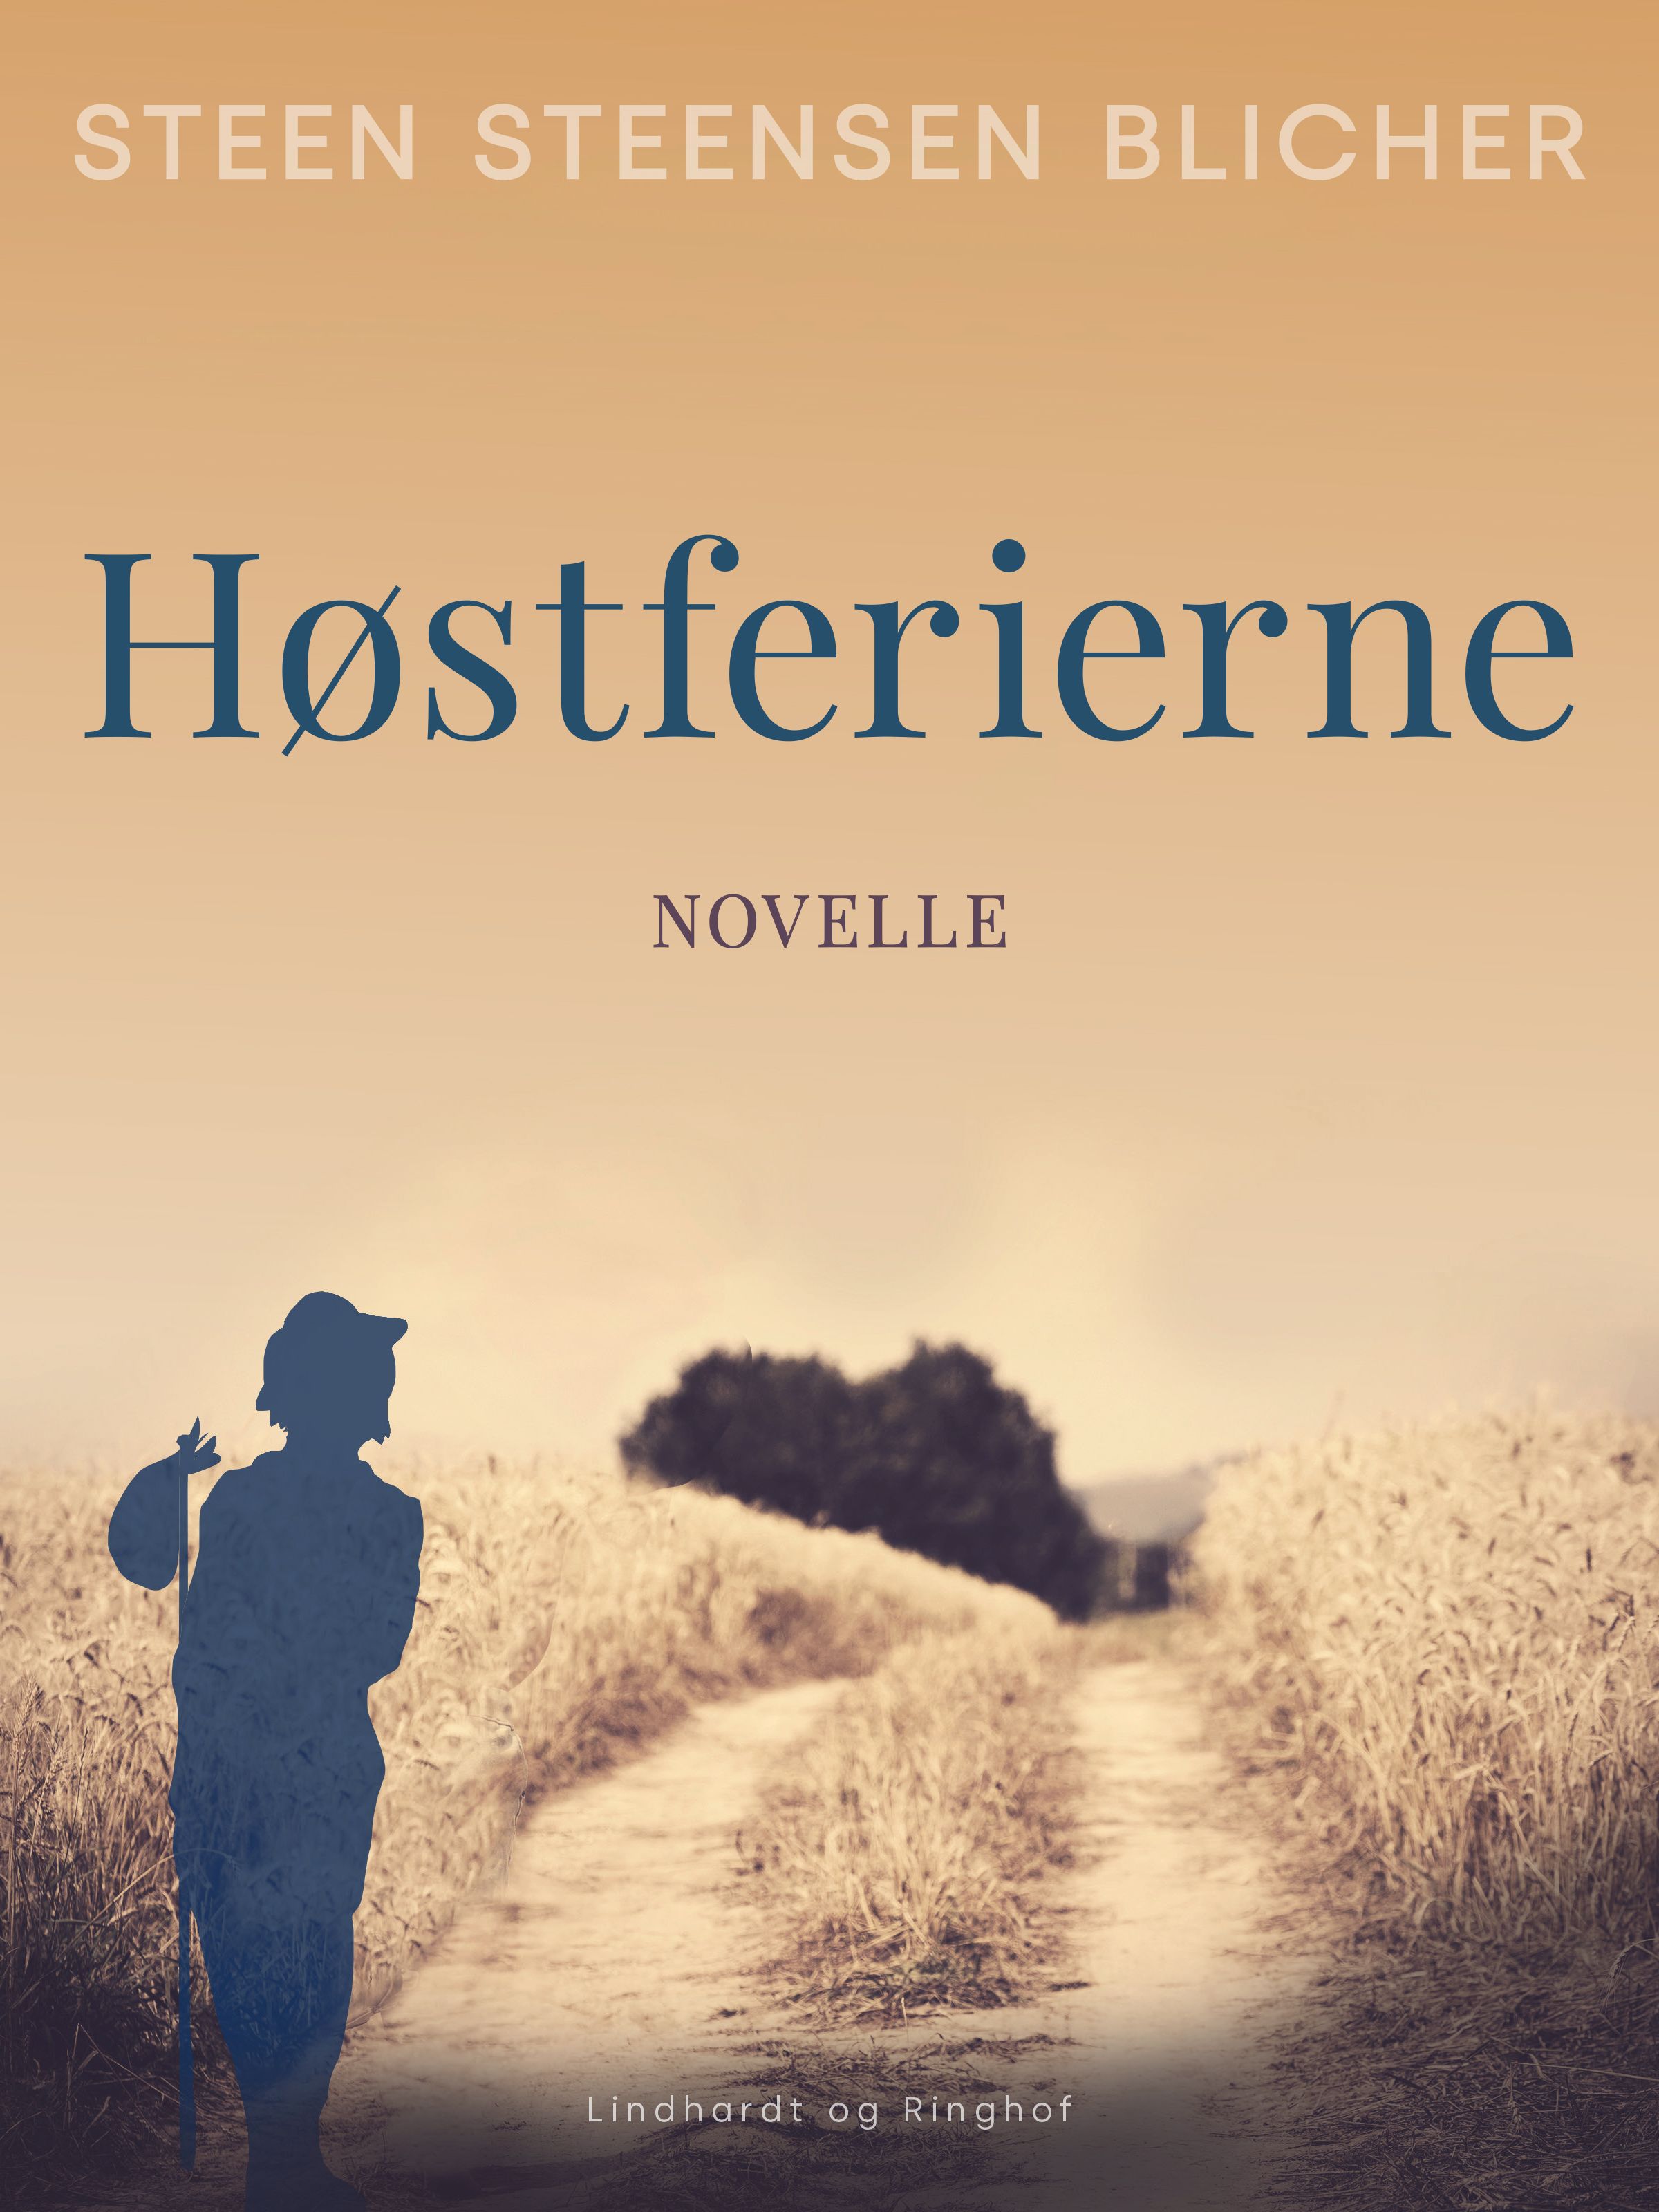 Høstferierne, e-bok av Steen Steensen Blicher